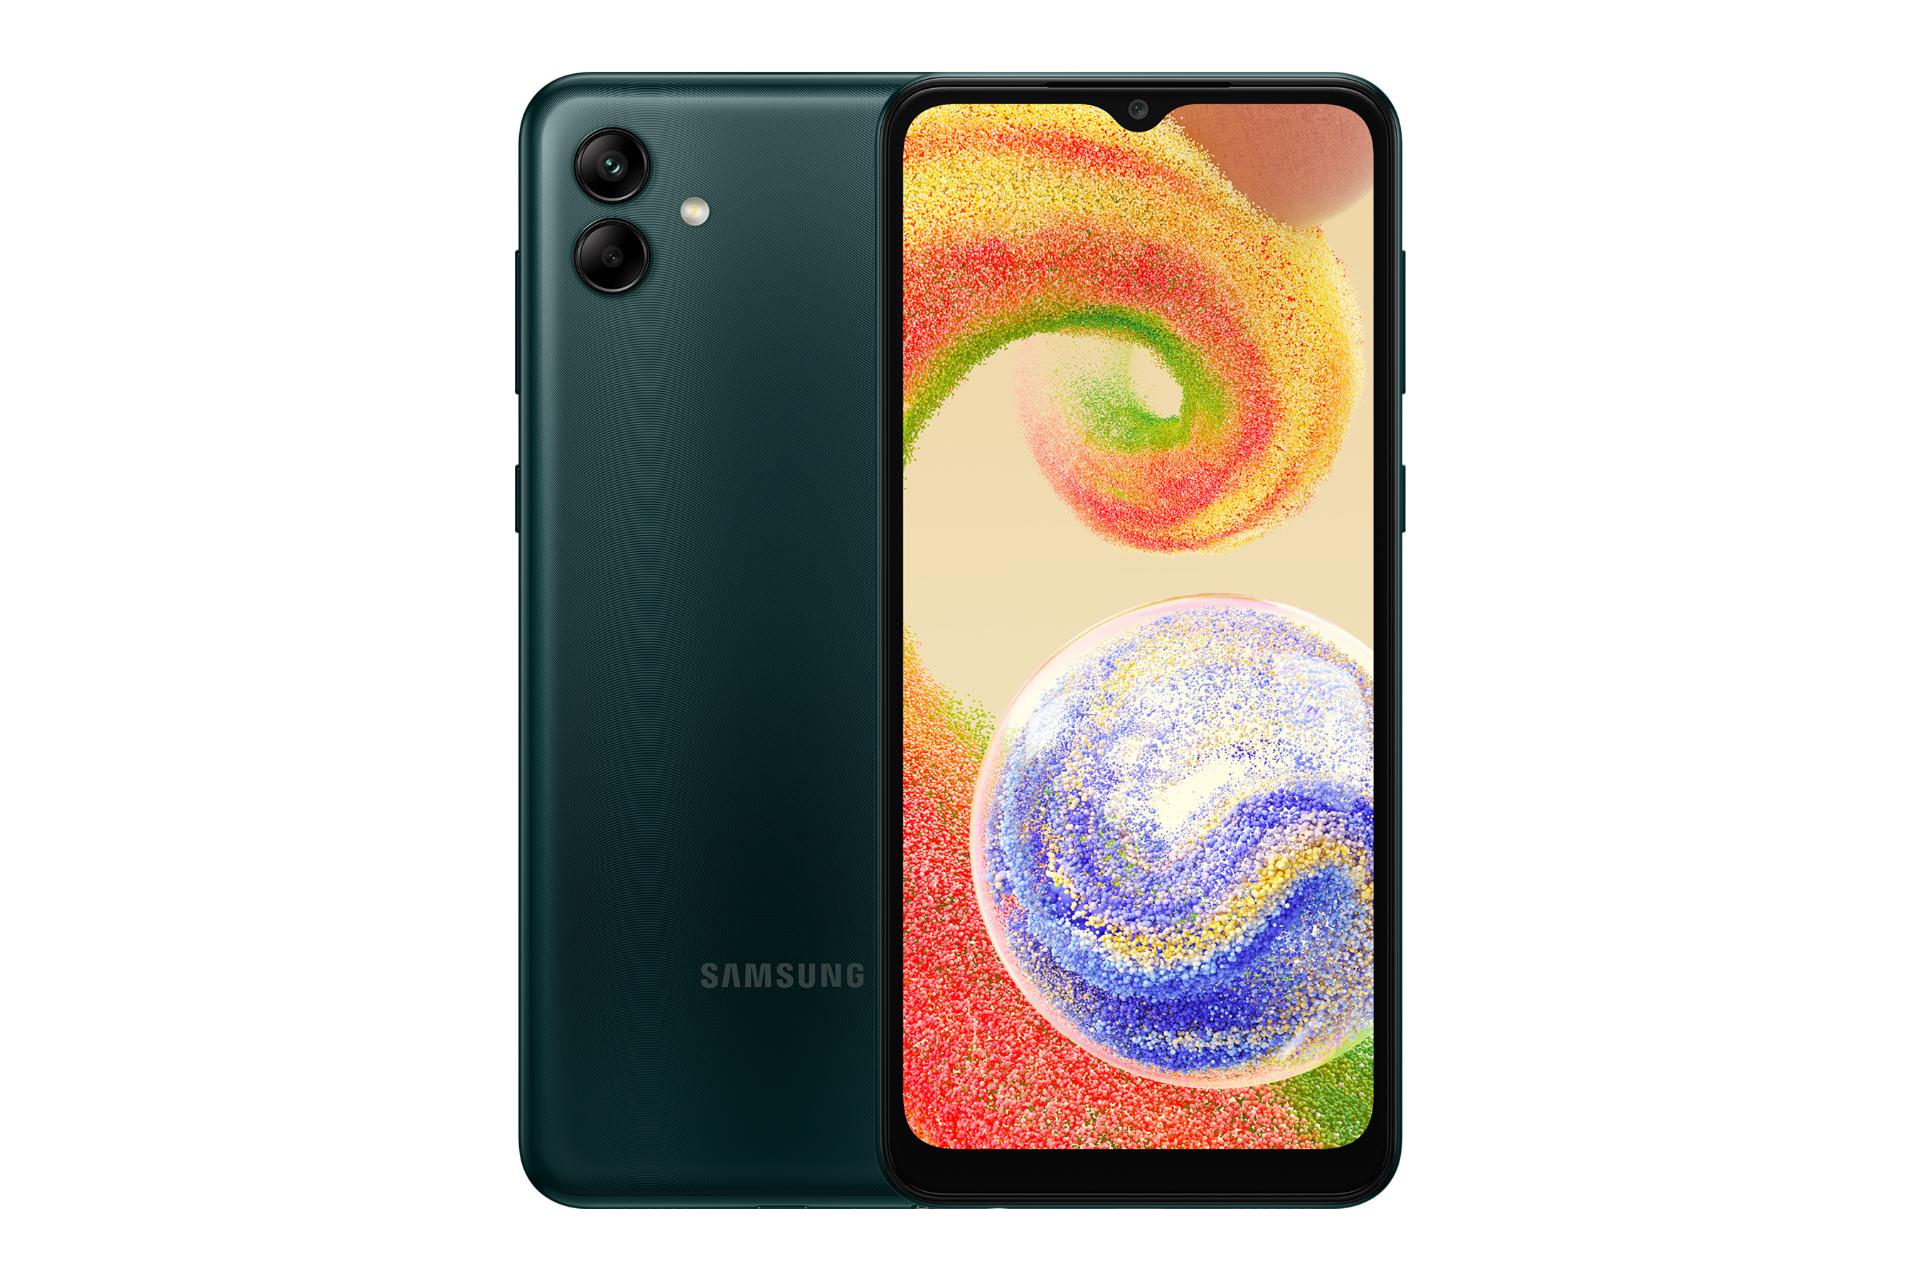 نمای کلی گوشی موبایل گلکسی A04 سامسونگ / Samsung Galaxy A04 با نمایشگر روشن و نمایش لوگو و دوربین رنگ سبز